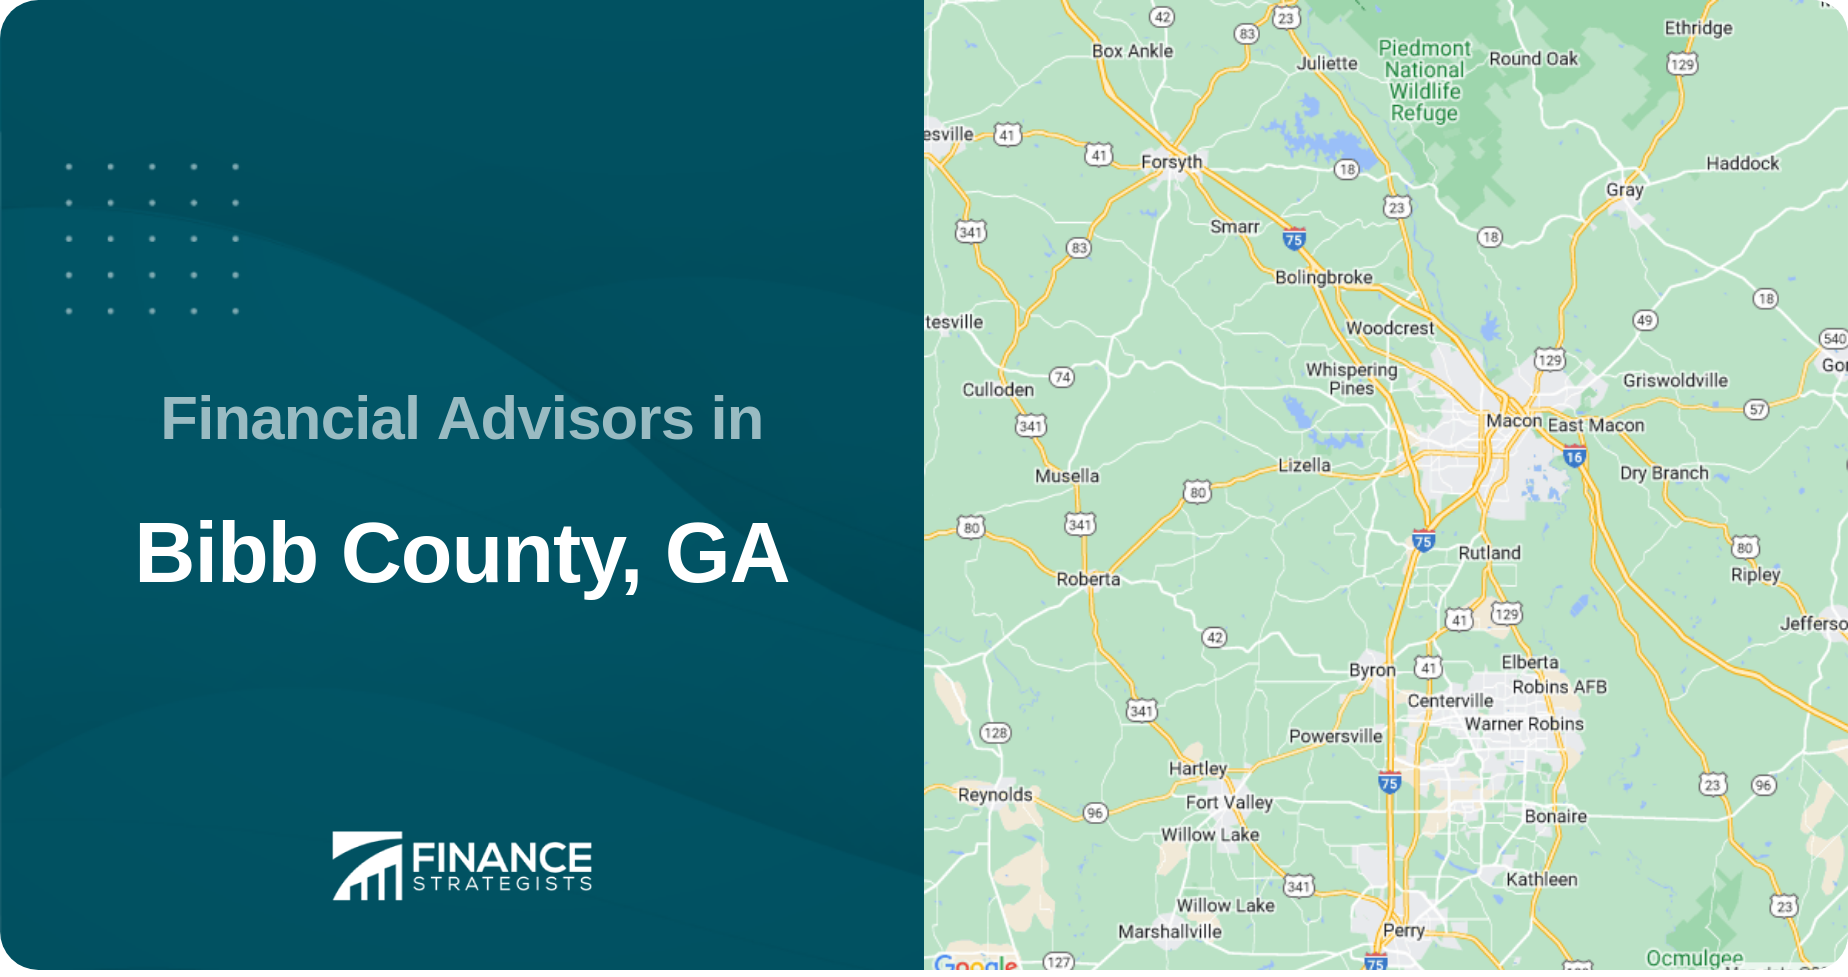 Financial Advisors in Bibb County, GA